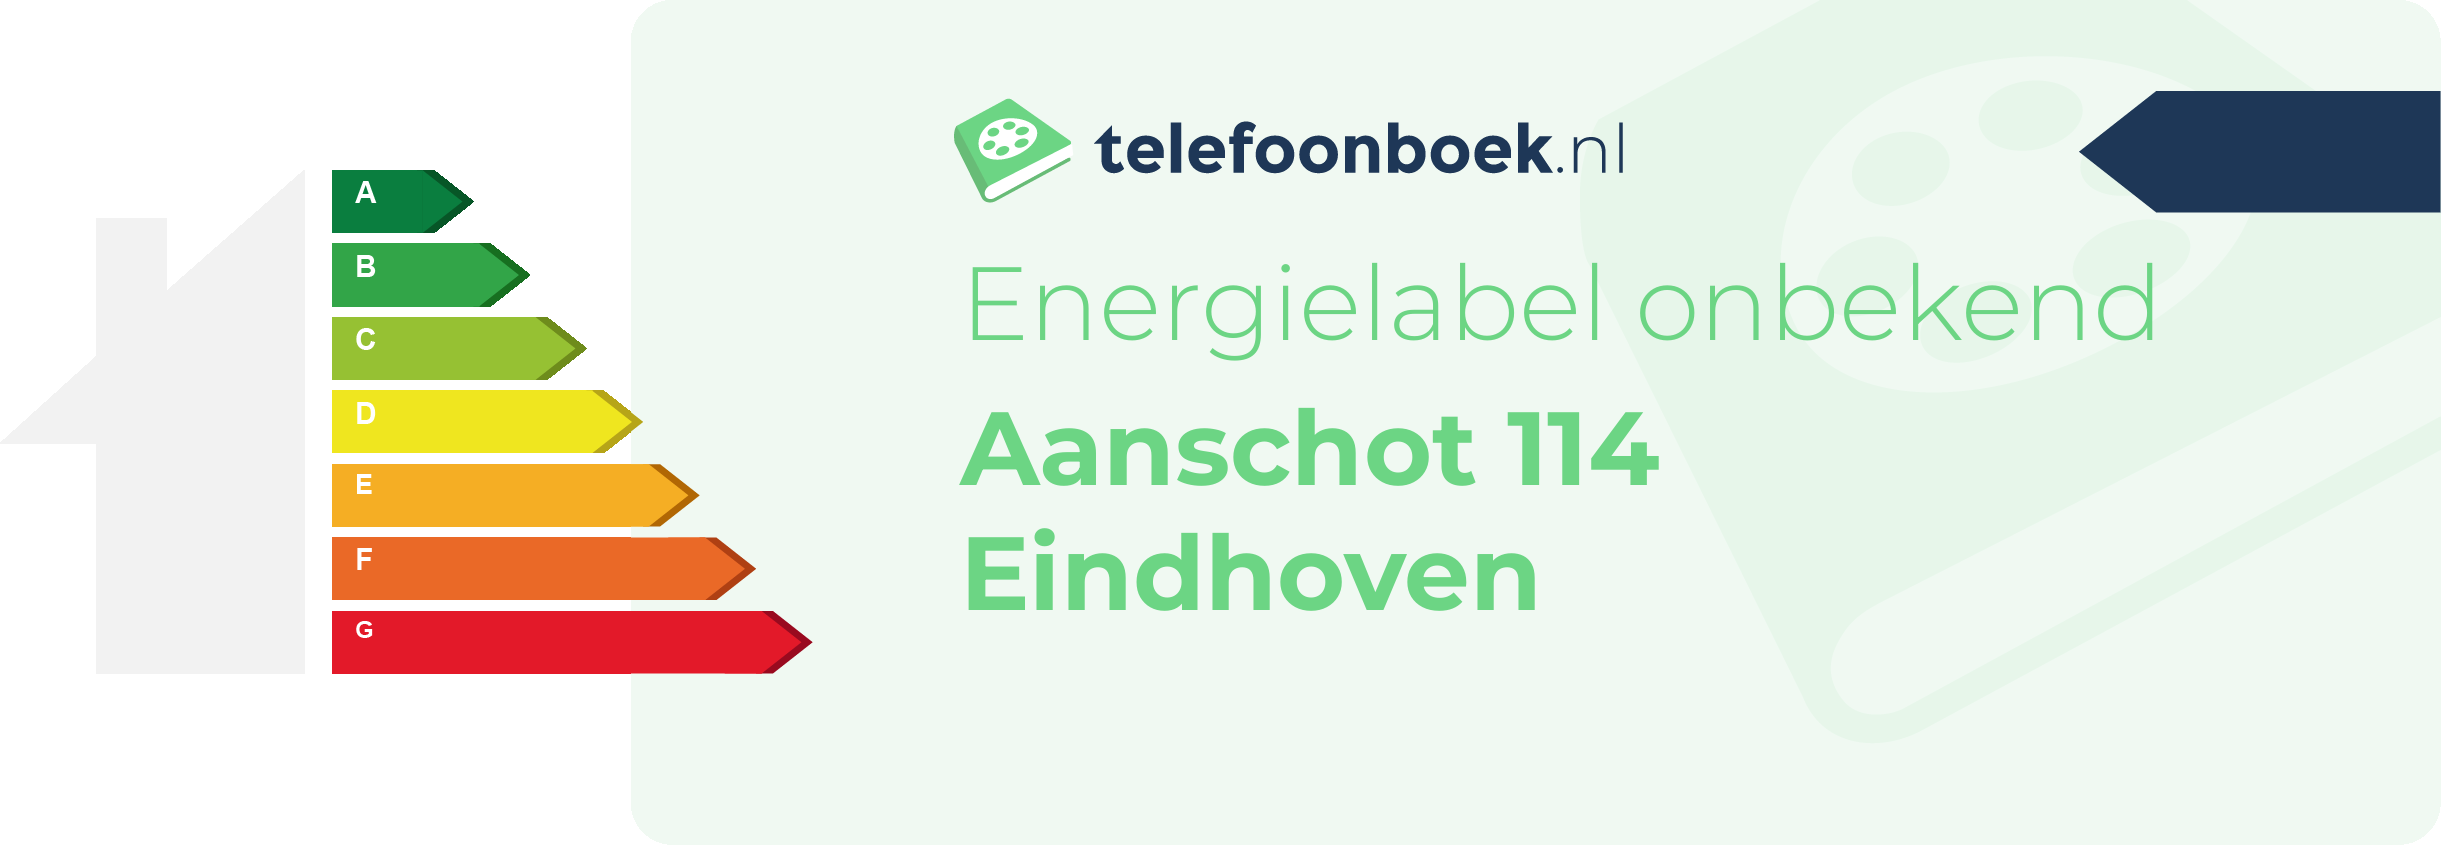 Energielabel Aanschot 114 Eindhoven